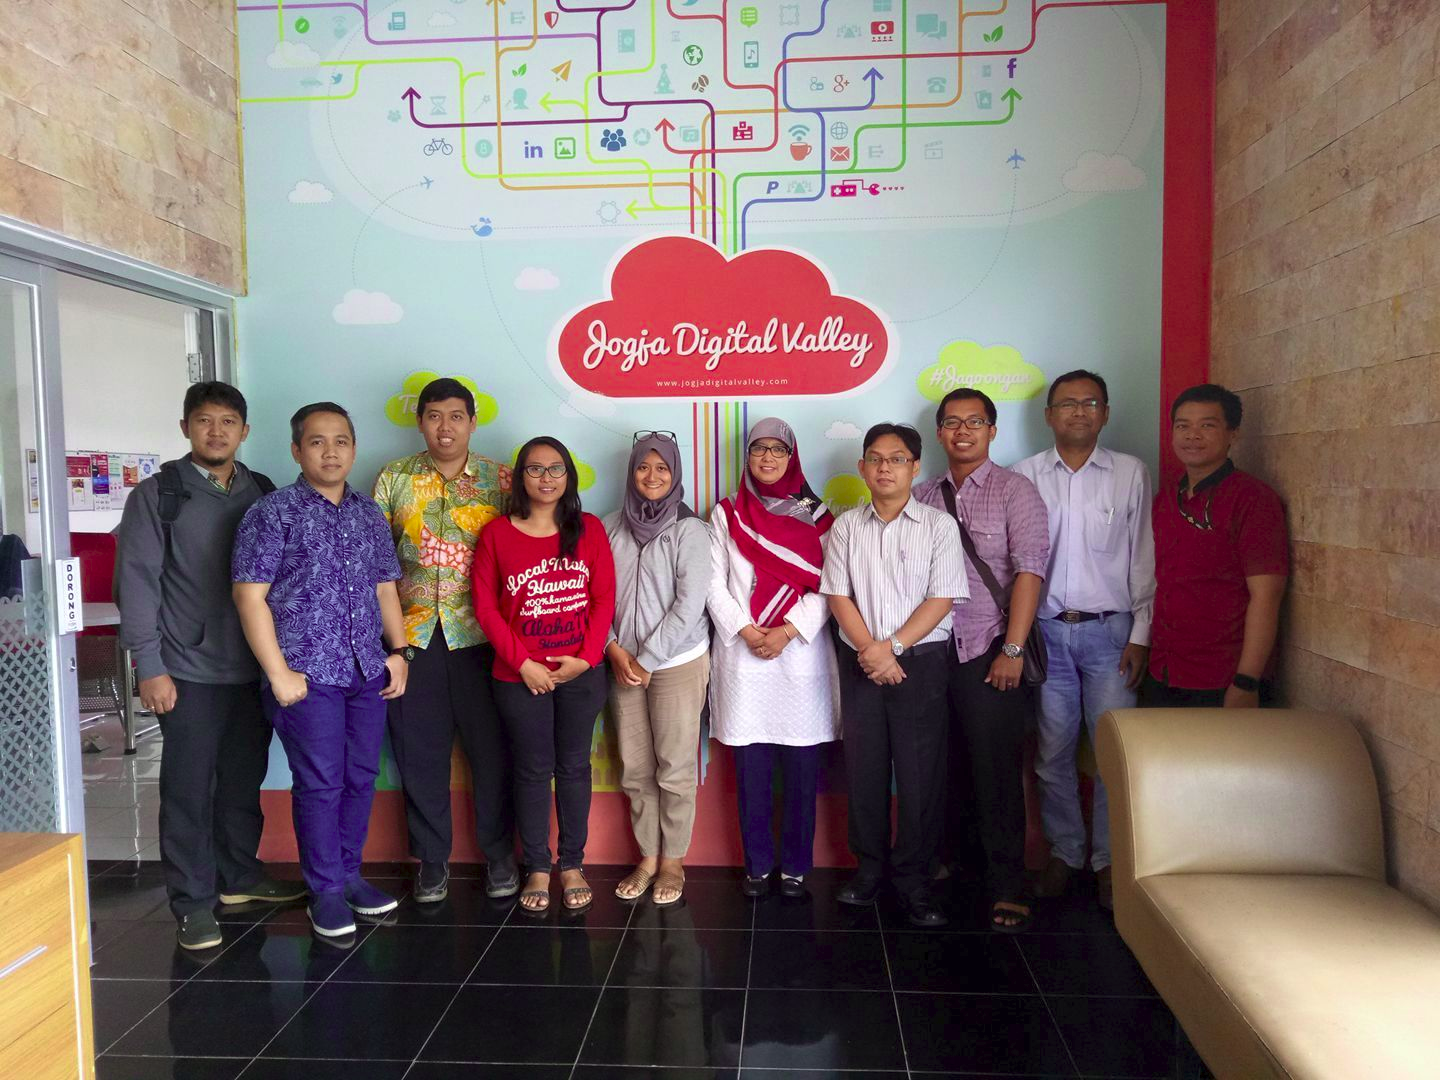 STMIK Akakom Yogyakarta Mengikuti Pertemuan Dengan Startup di Jogja Digital Valley